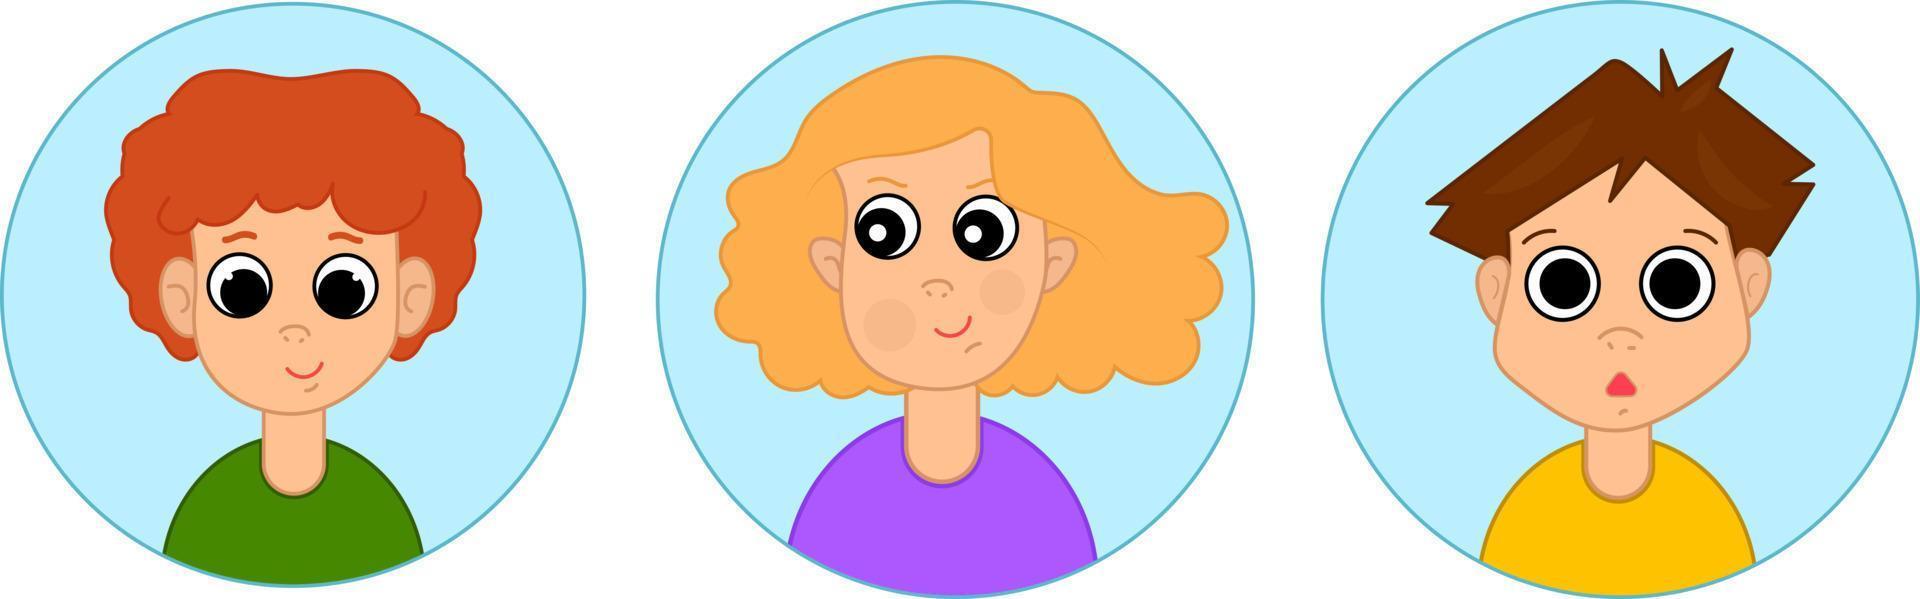 ensemble d'avatars pour enfants, petits garçons et filles d'âge scolaire. illustration vectorielle en style cartoon vecteur